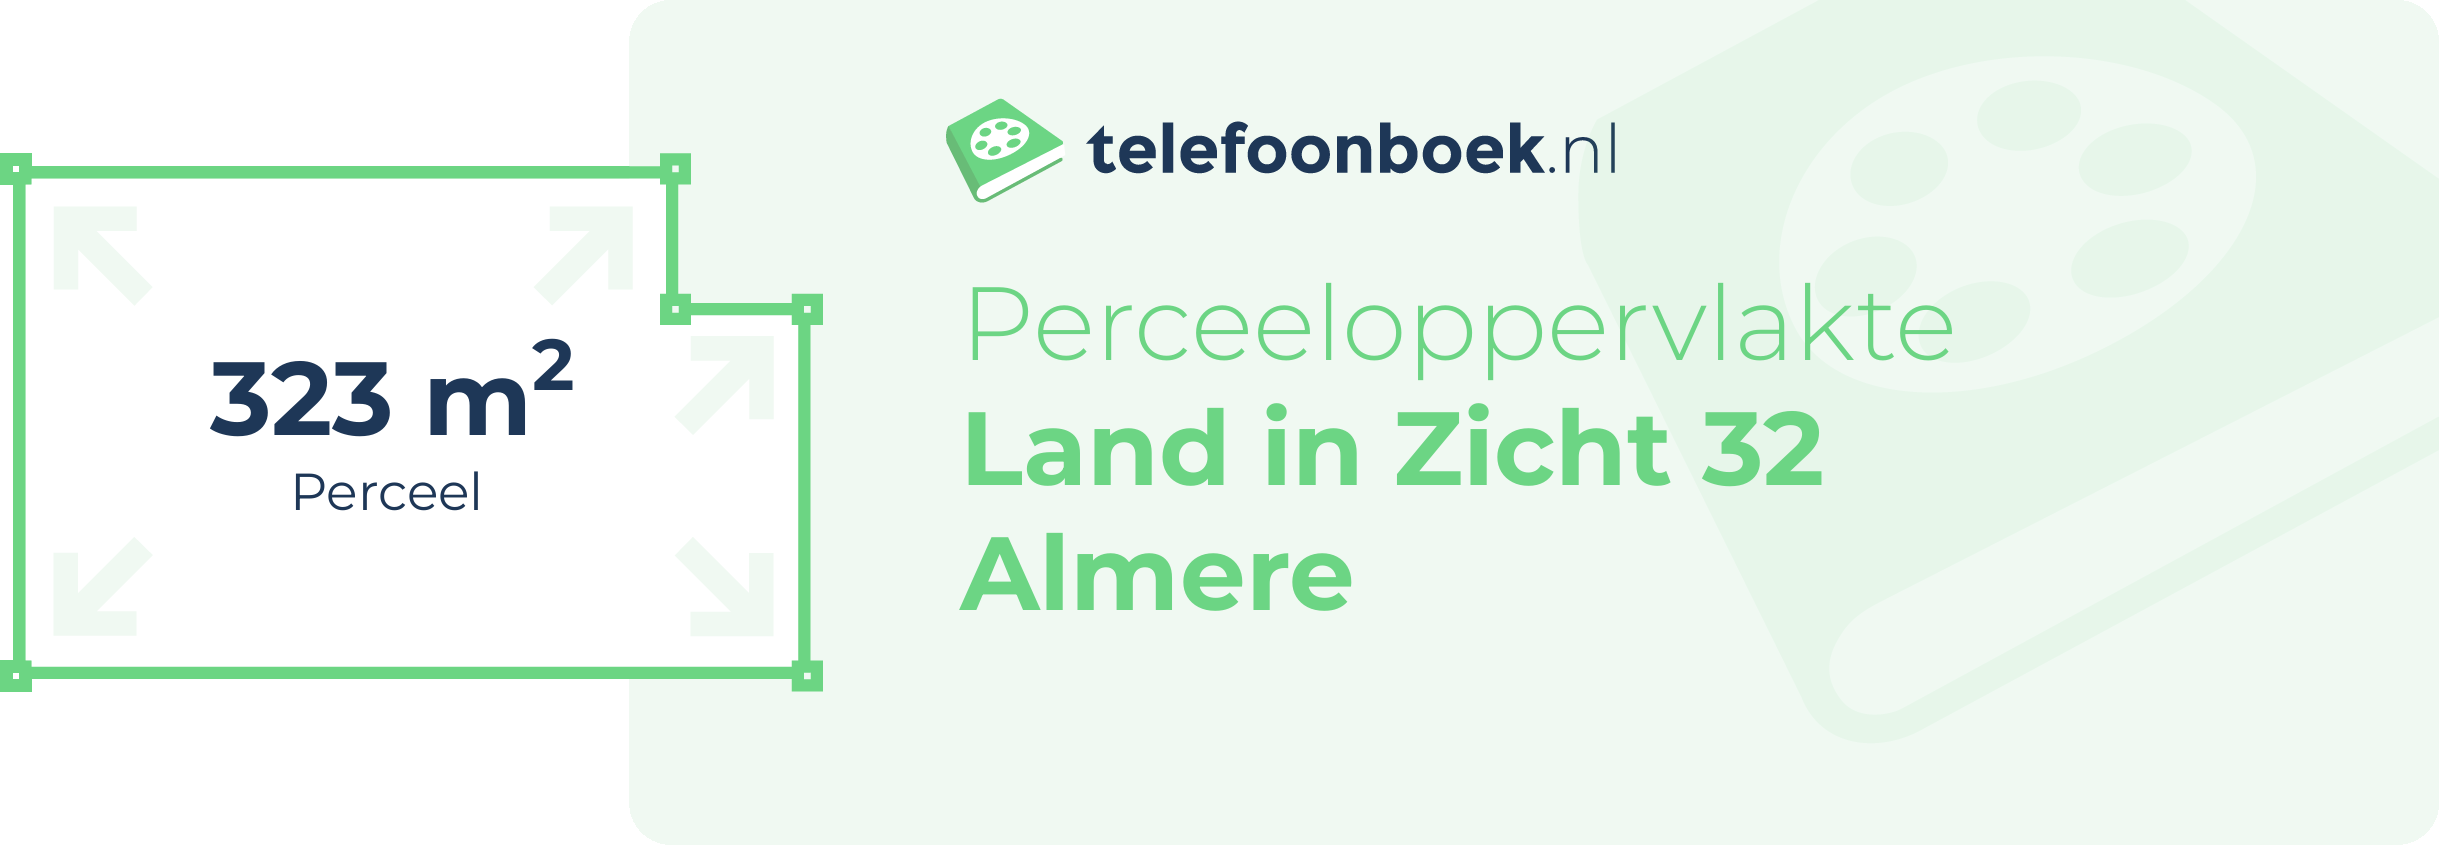 Perceeloppervlakte Land In Zicht 32 Almere